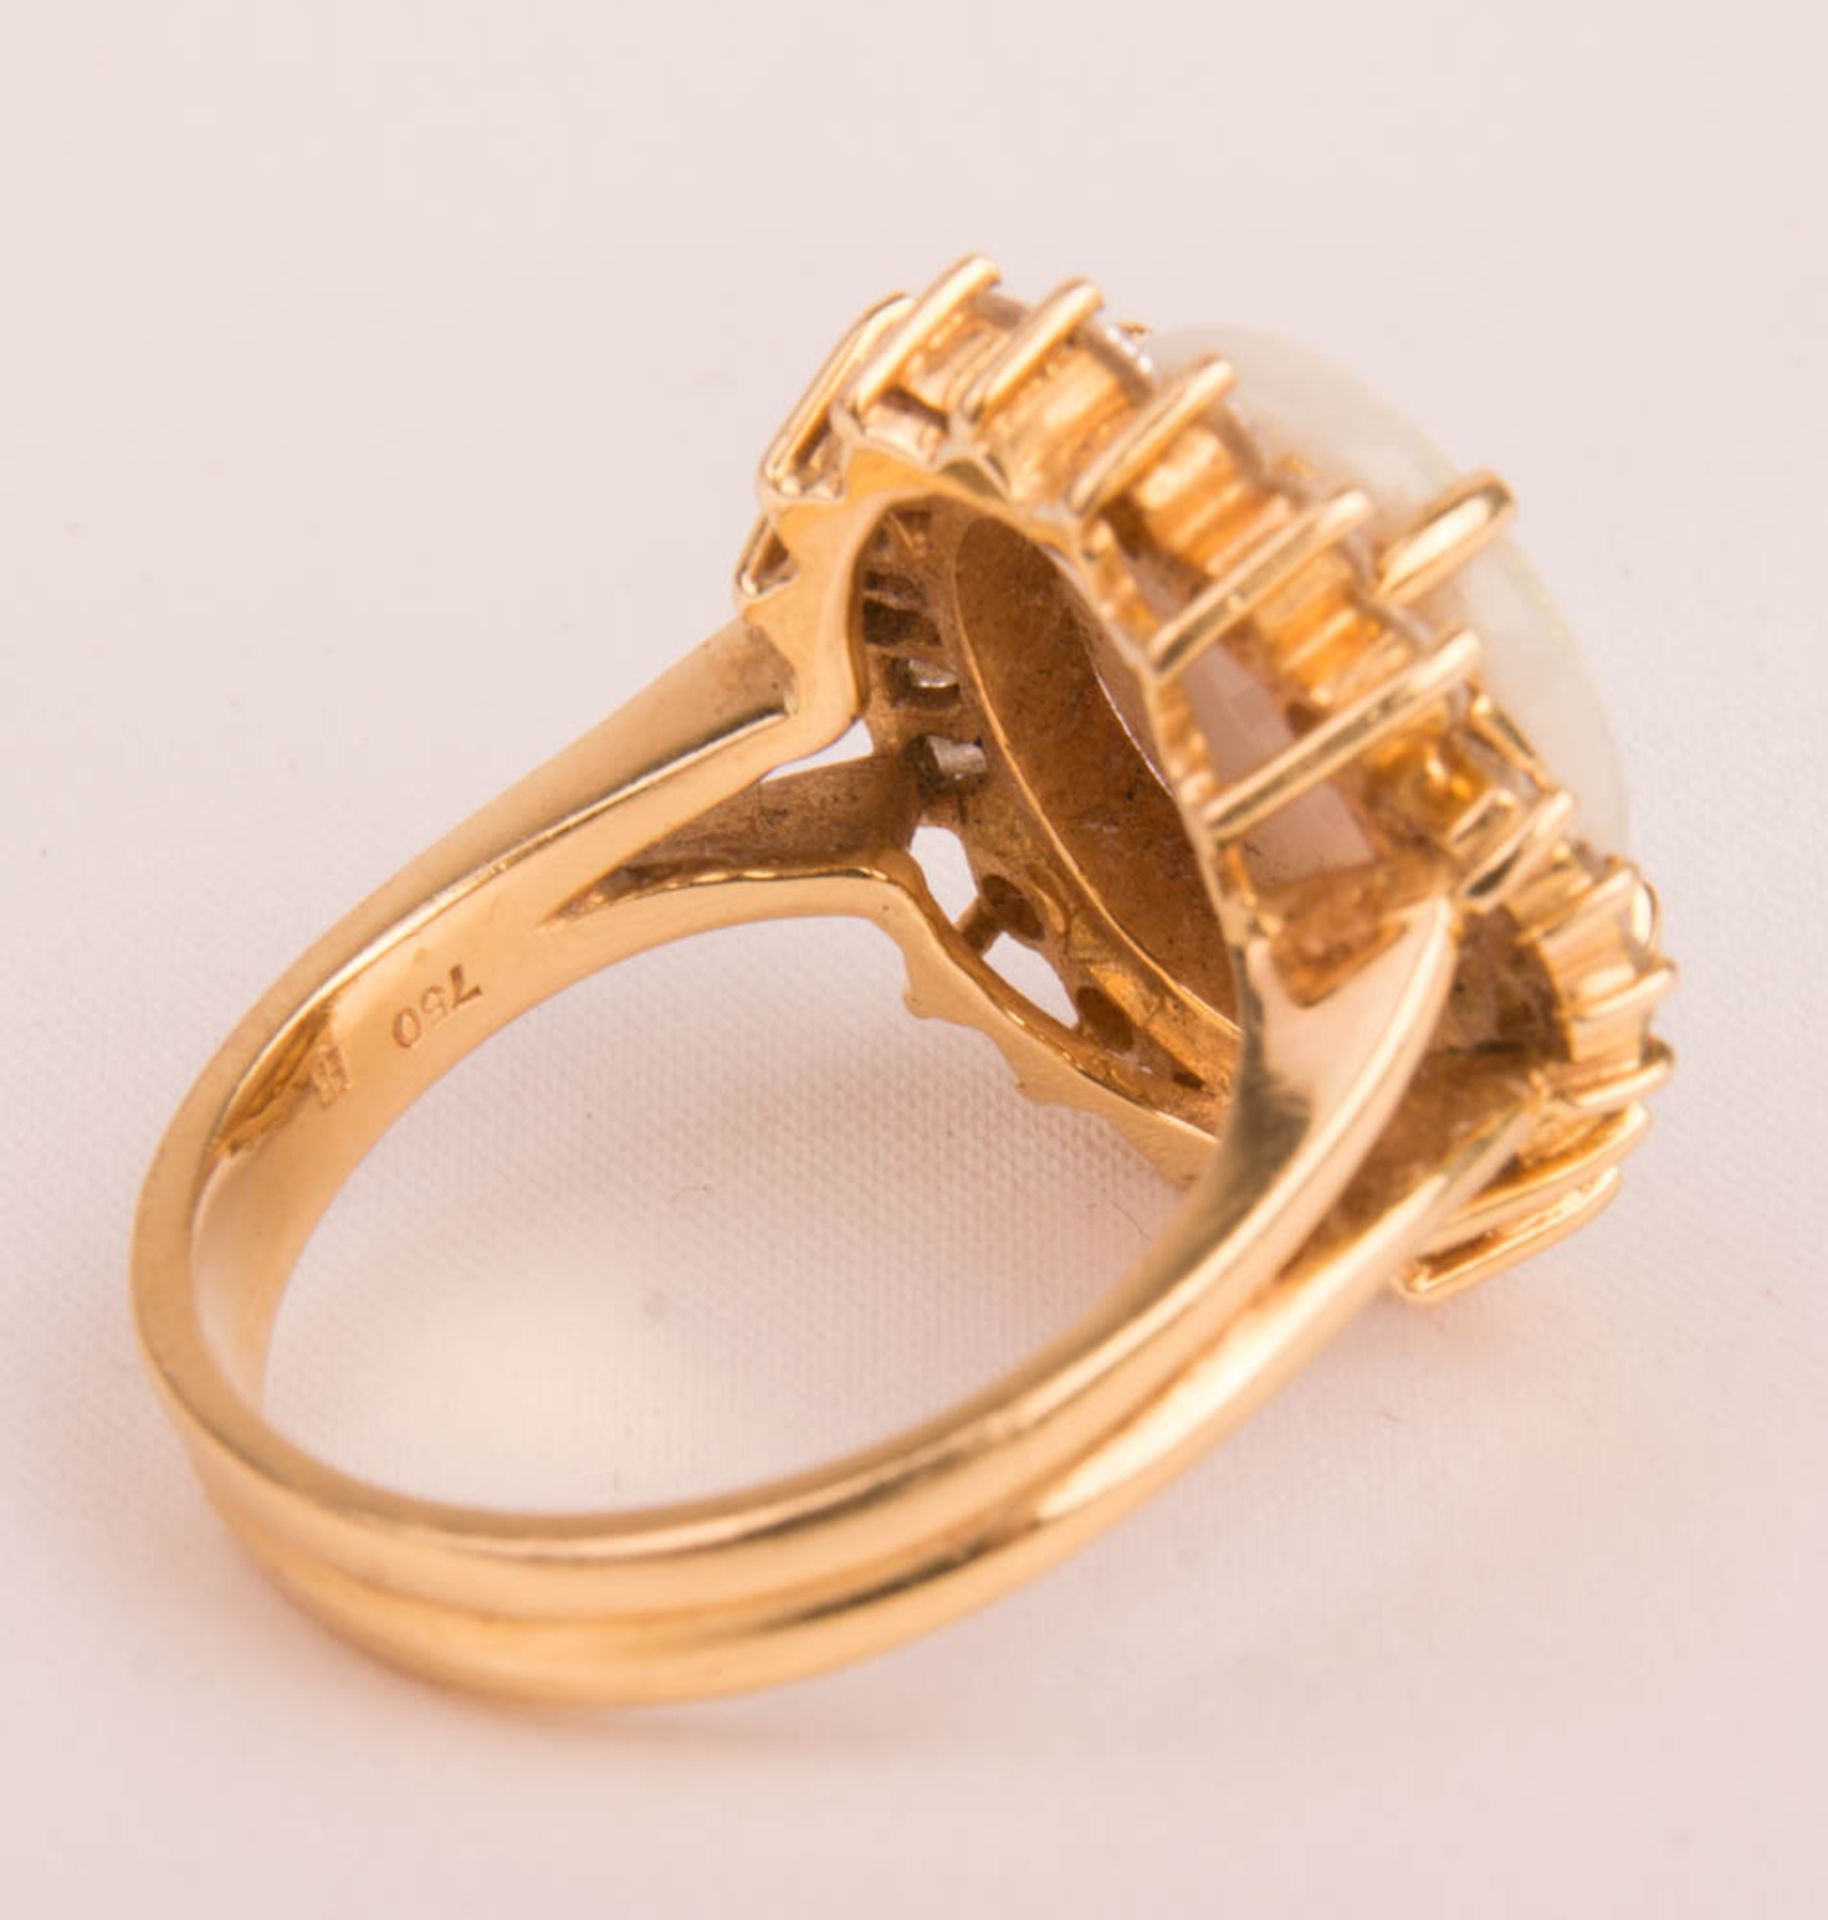 Ring mit Opaldoublette und Diamanten, 750er Gelbgold. - Bild 4 aus 5